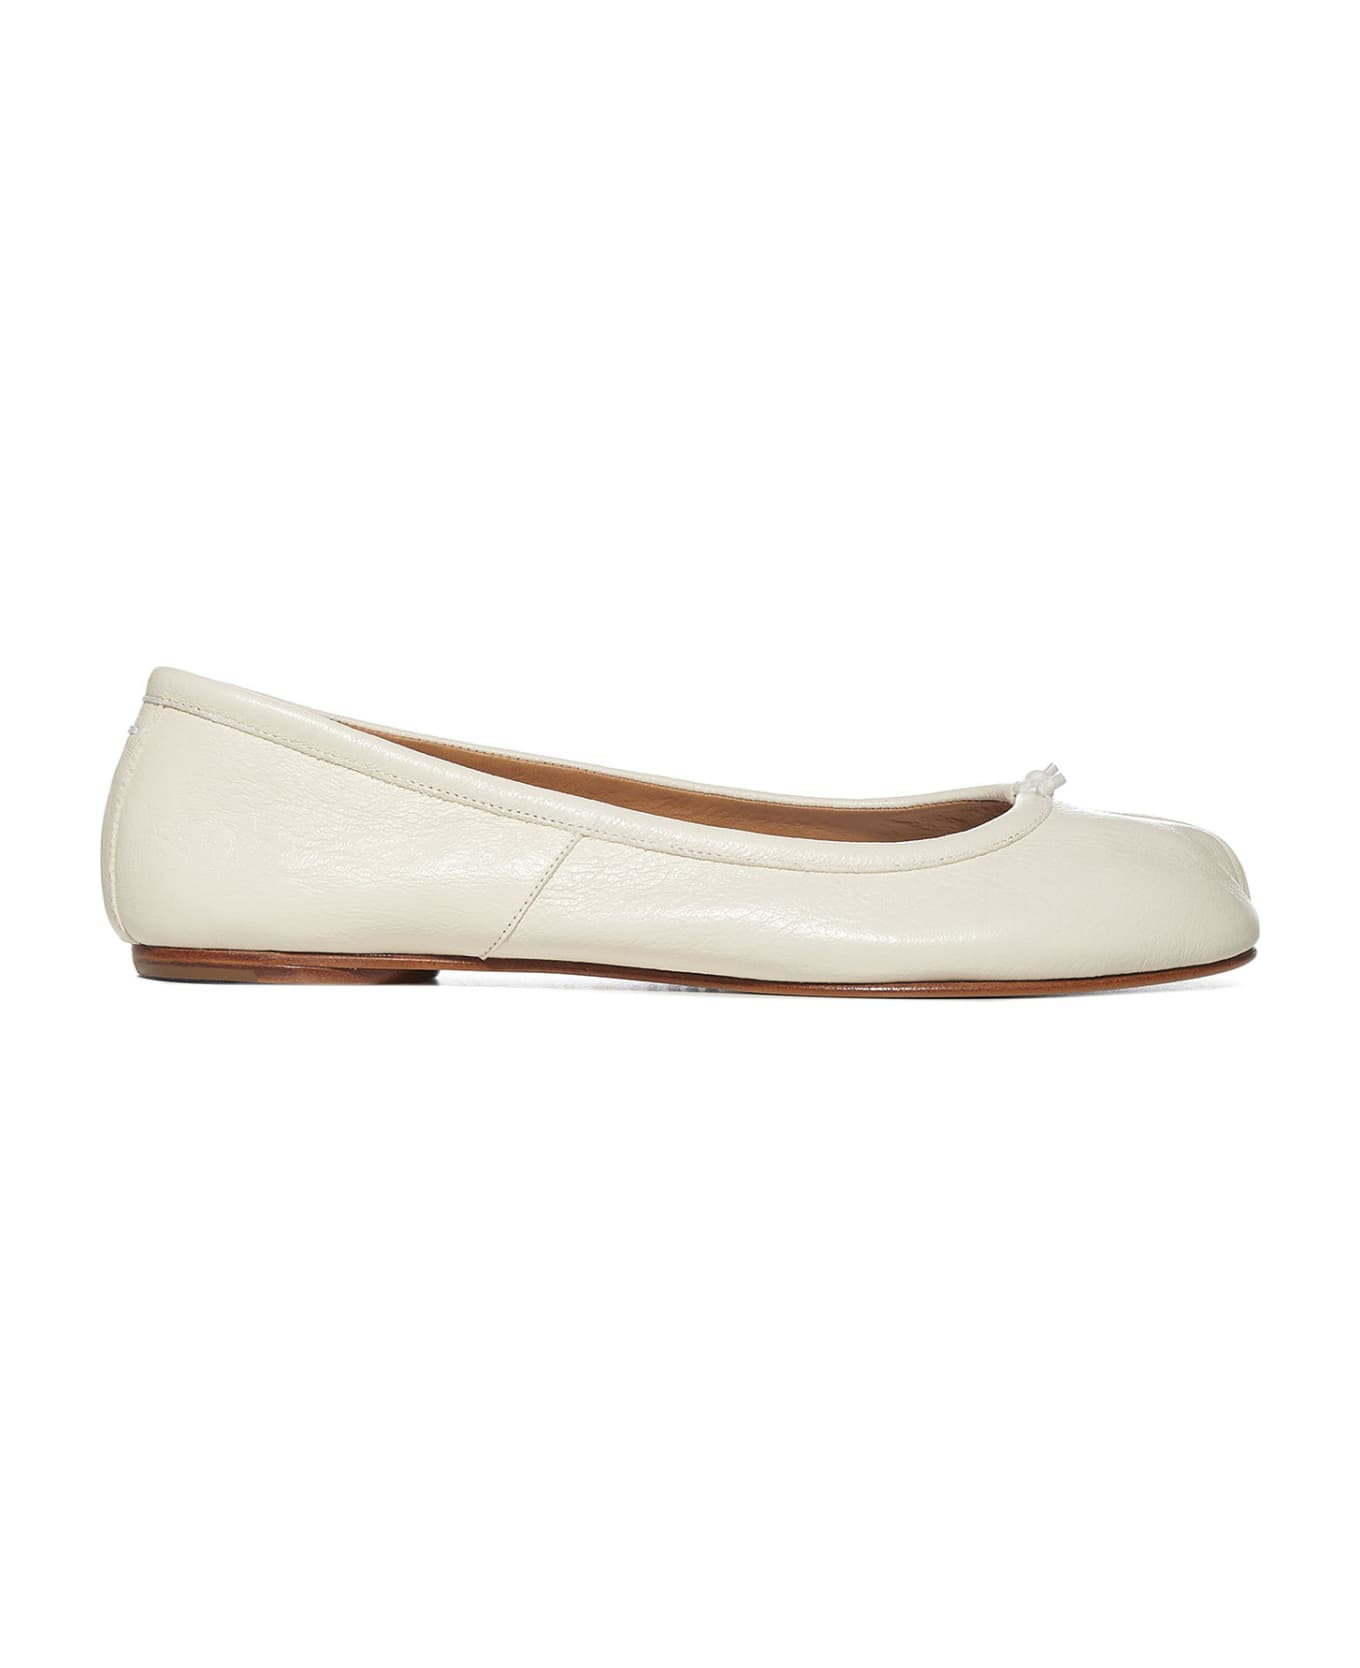 Maison Margiela Flat Shoes - White